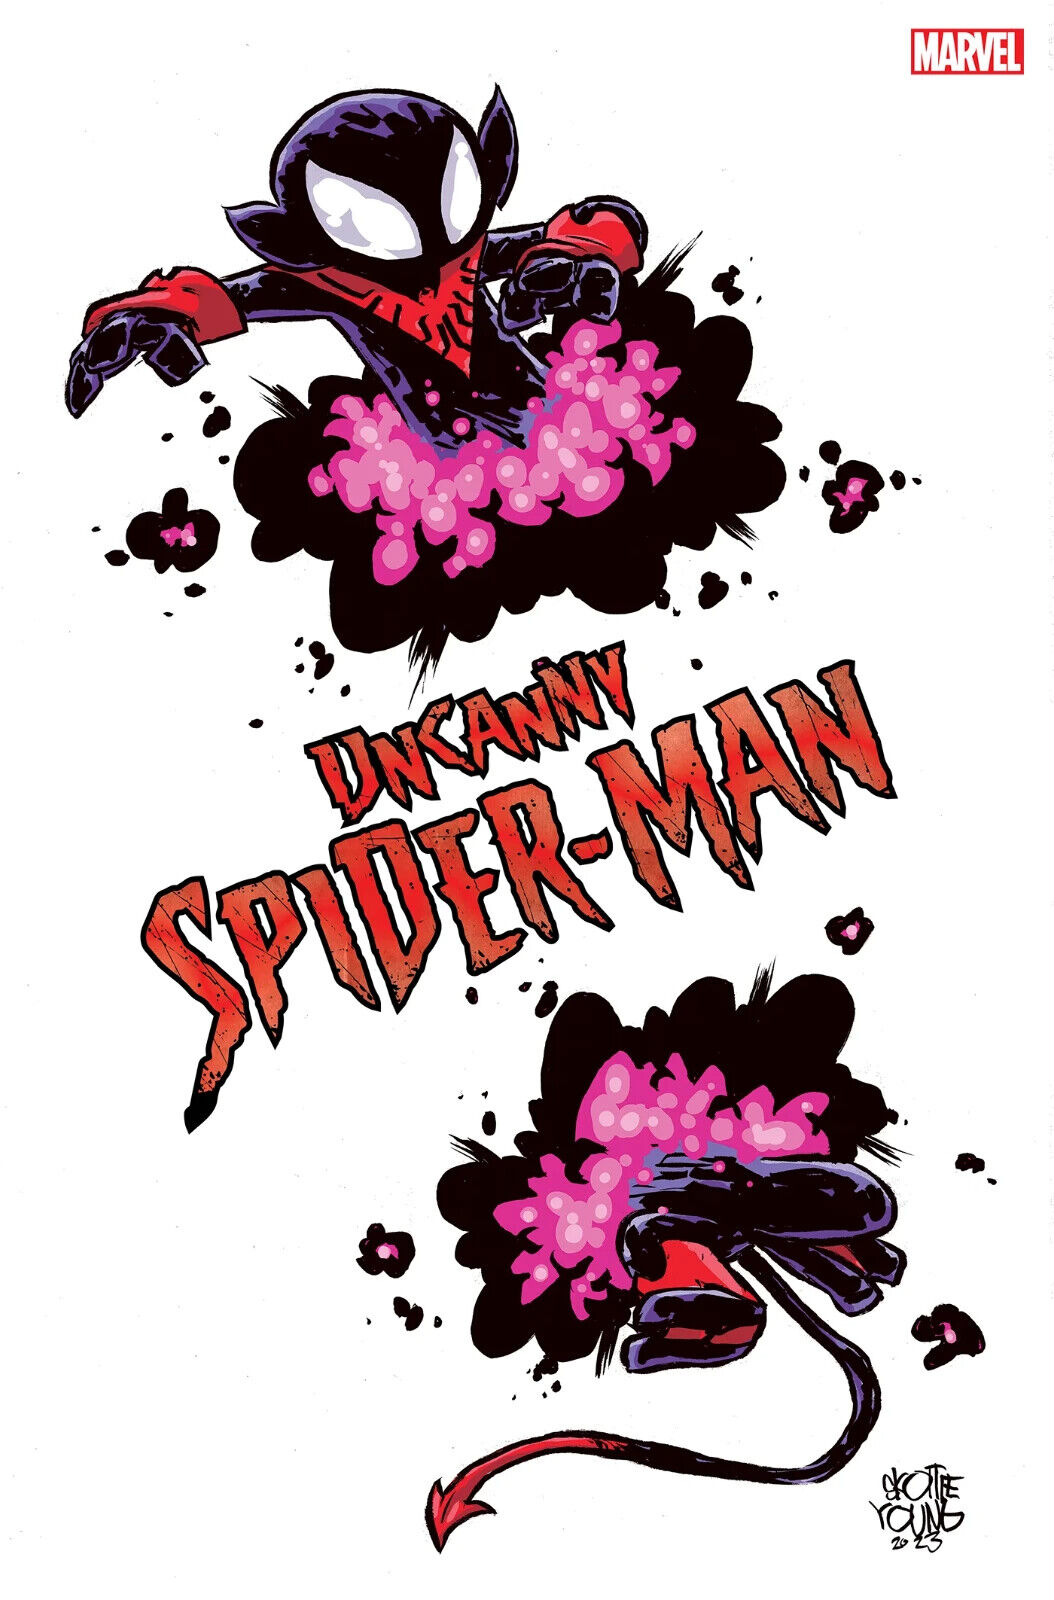 UNCANNY SPIDER-MAN #1 (SKOTTIE YOUNG 'FALL' VARIANT) COMIC BOOK ~ Marvel Comics